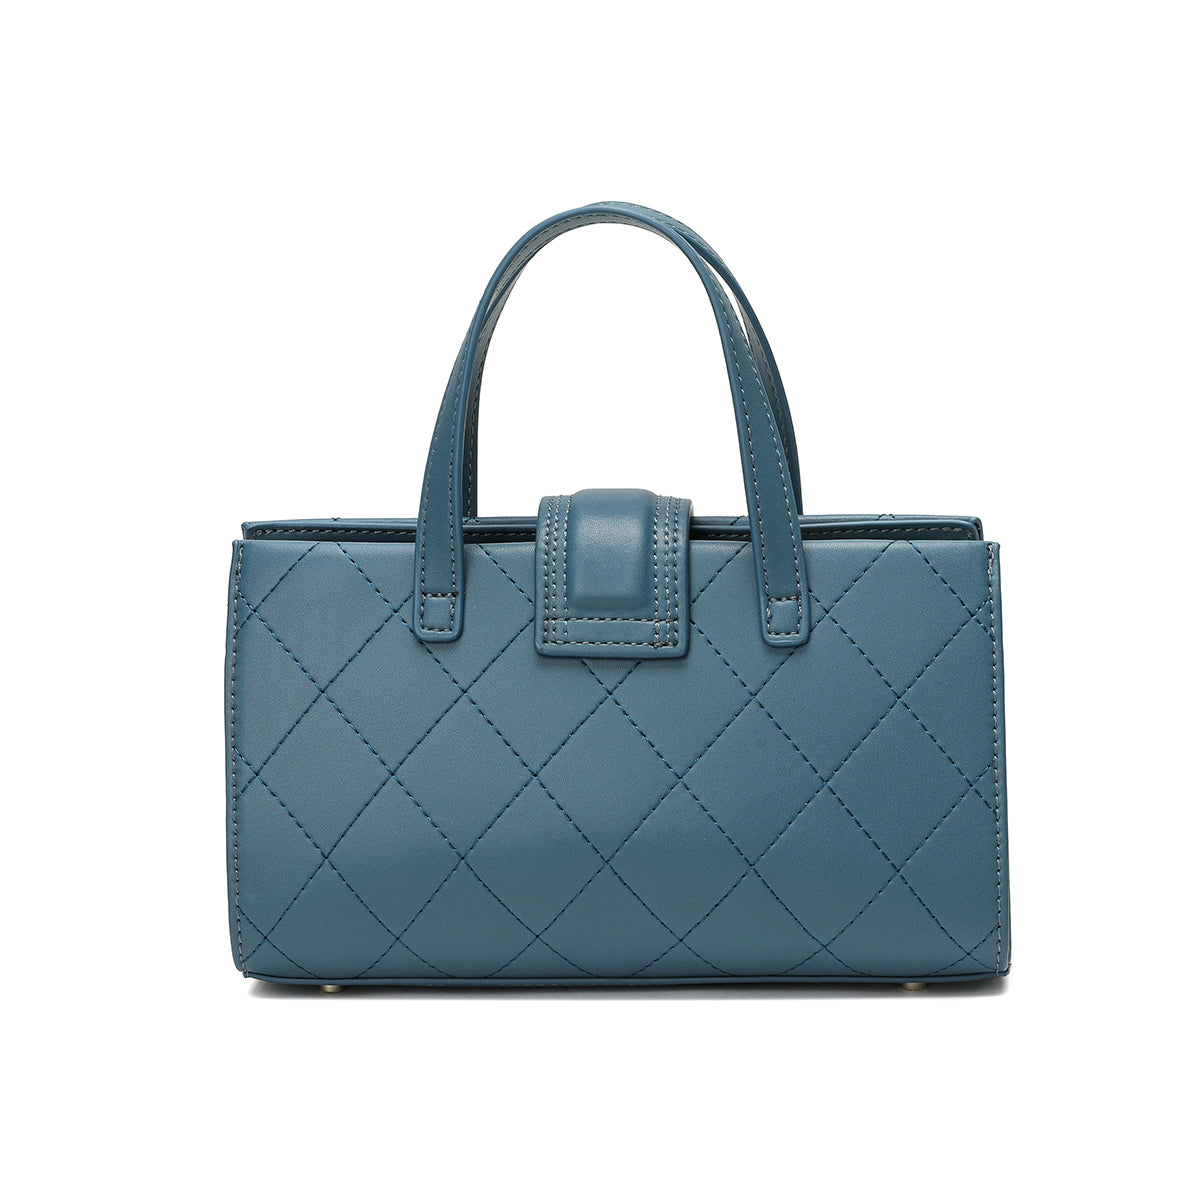 حقيبة يد من ساغا باللون الأزرق الفاتح مع تصميم مبطن أنيق ومقبض أعلى قوي